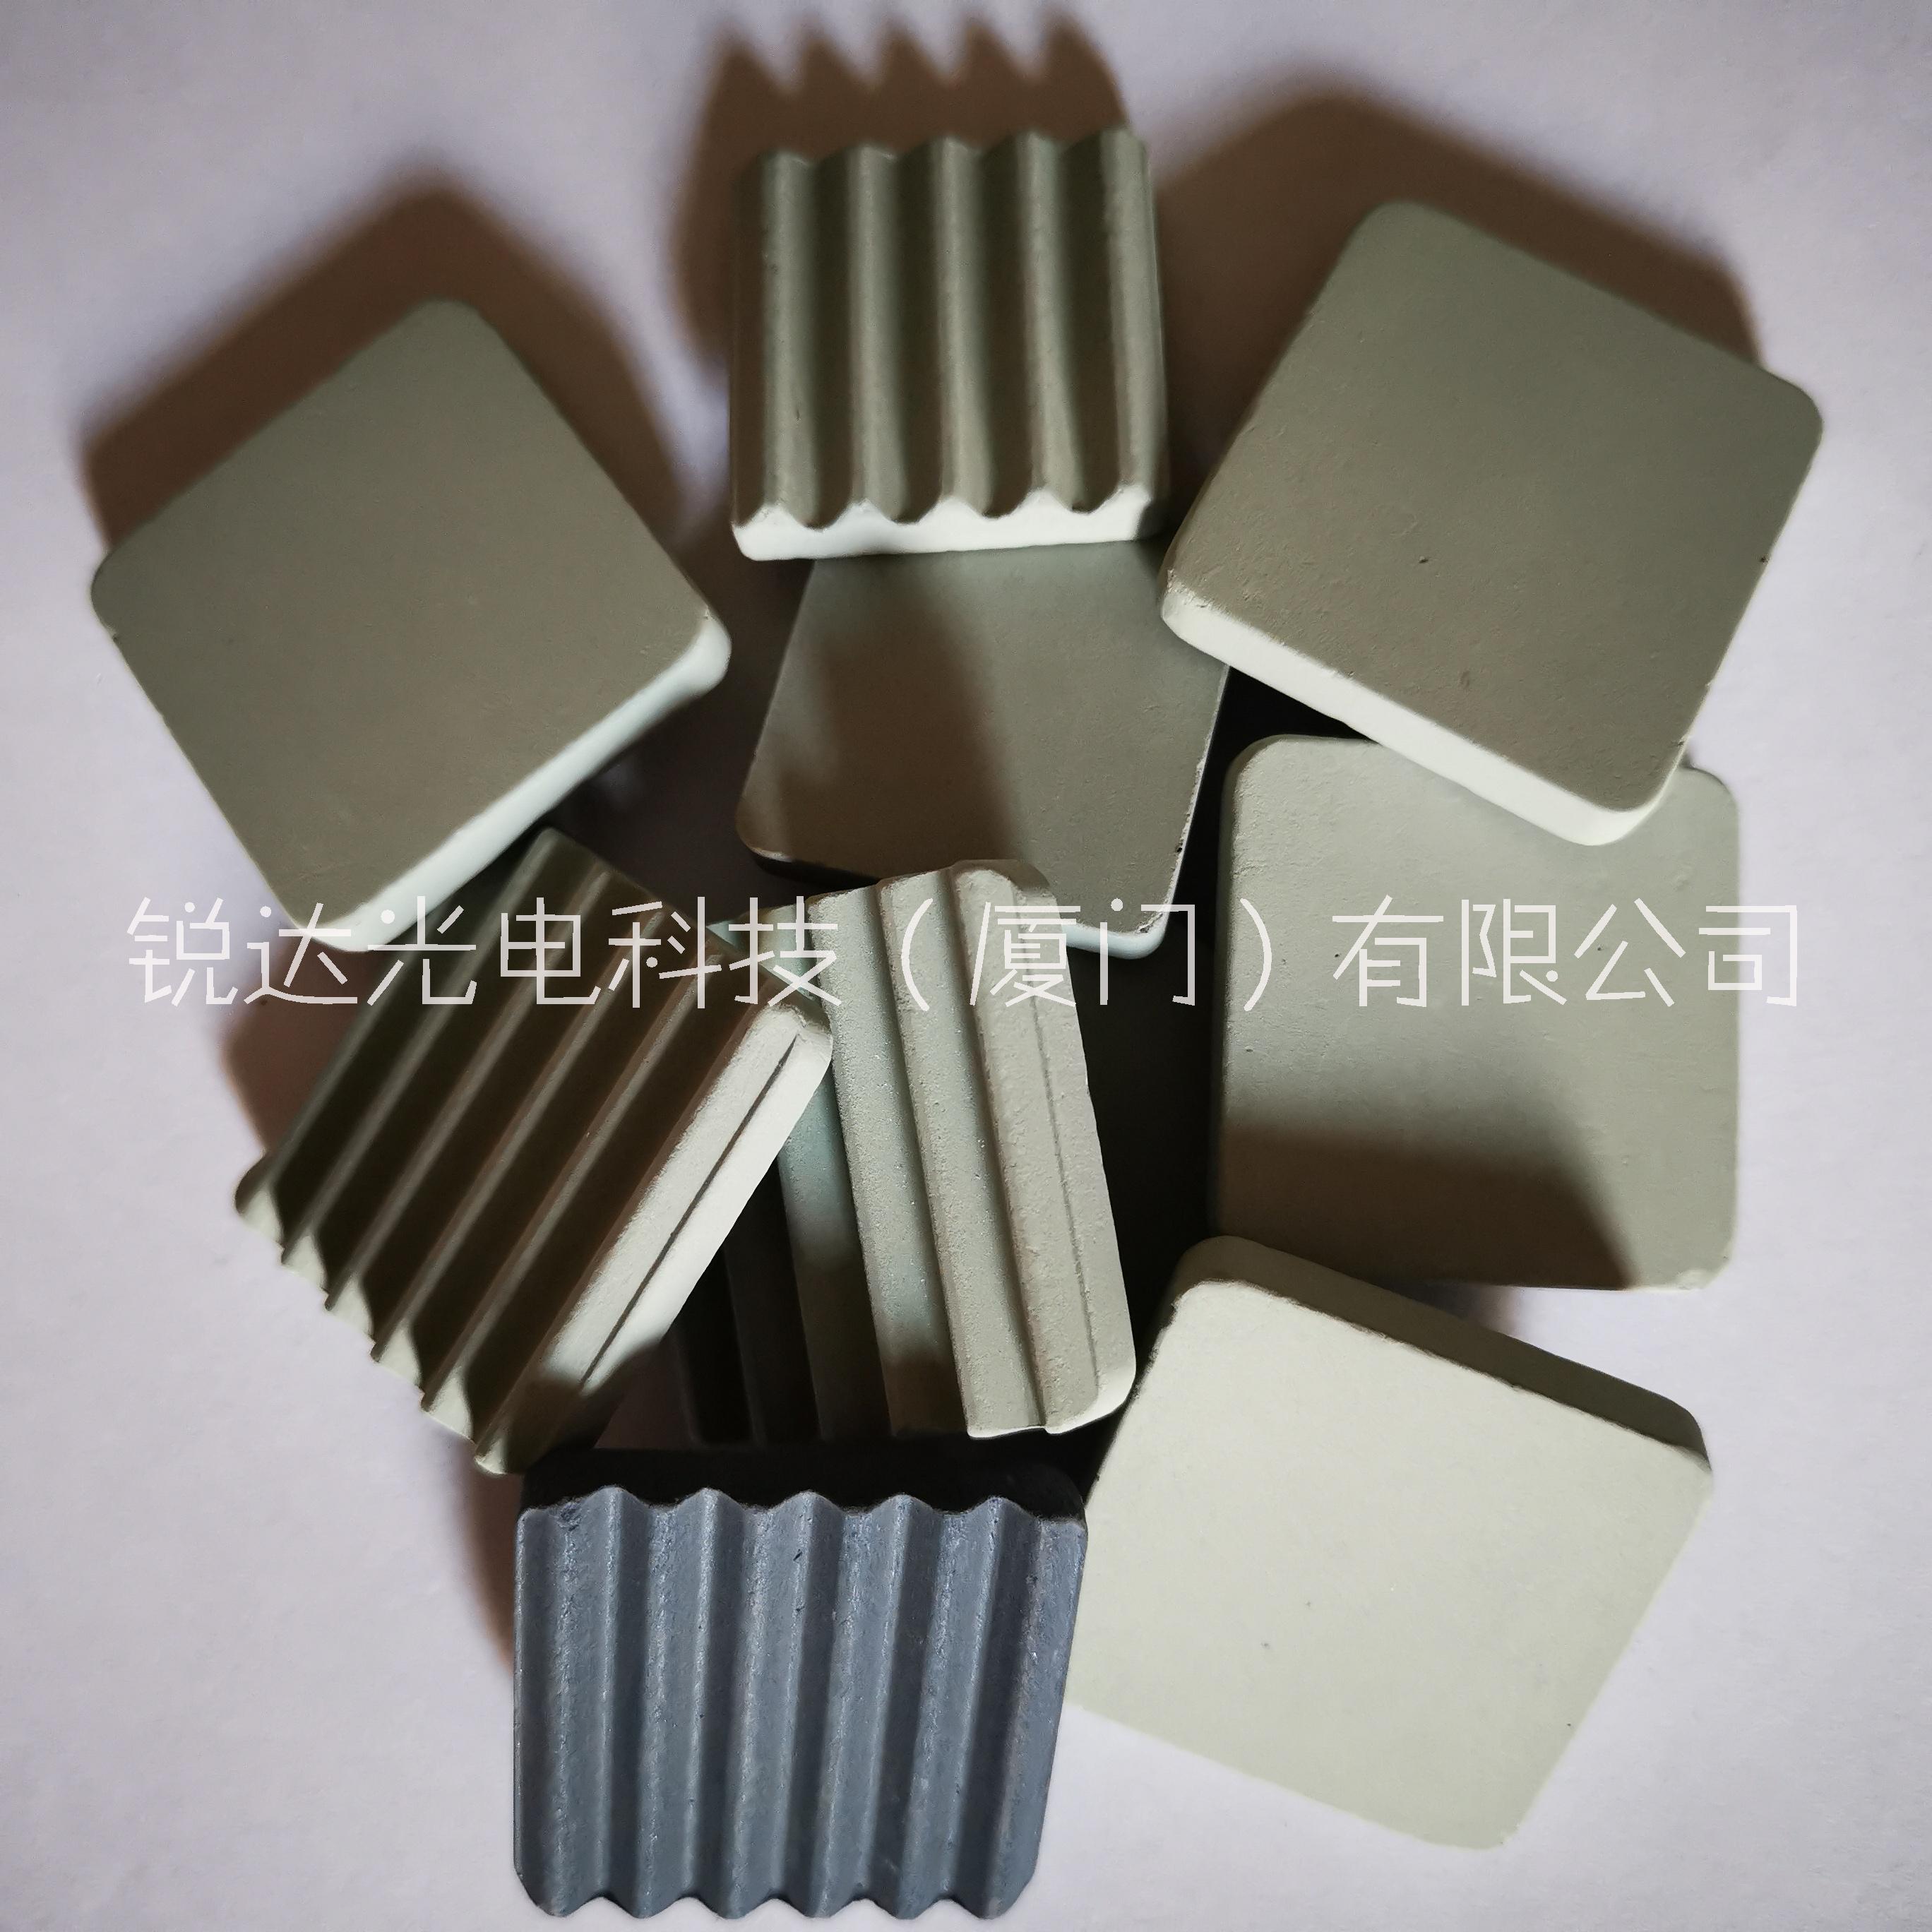 惠州陶瓷散热片厂家 电视机顶盒子陶瓷散热片20*20*5.0mm 陶瓷散热片样品、规格